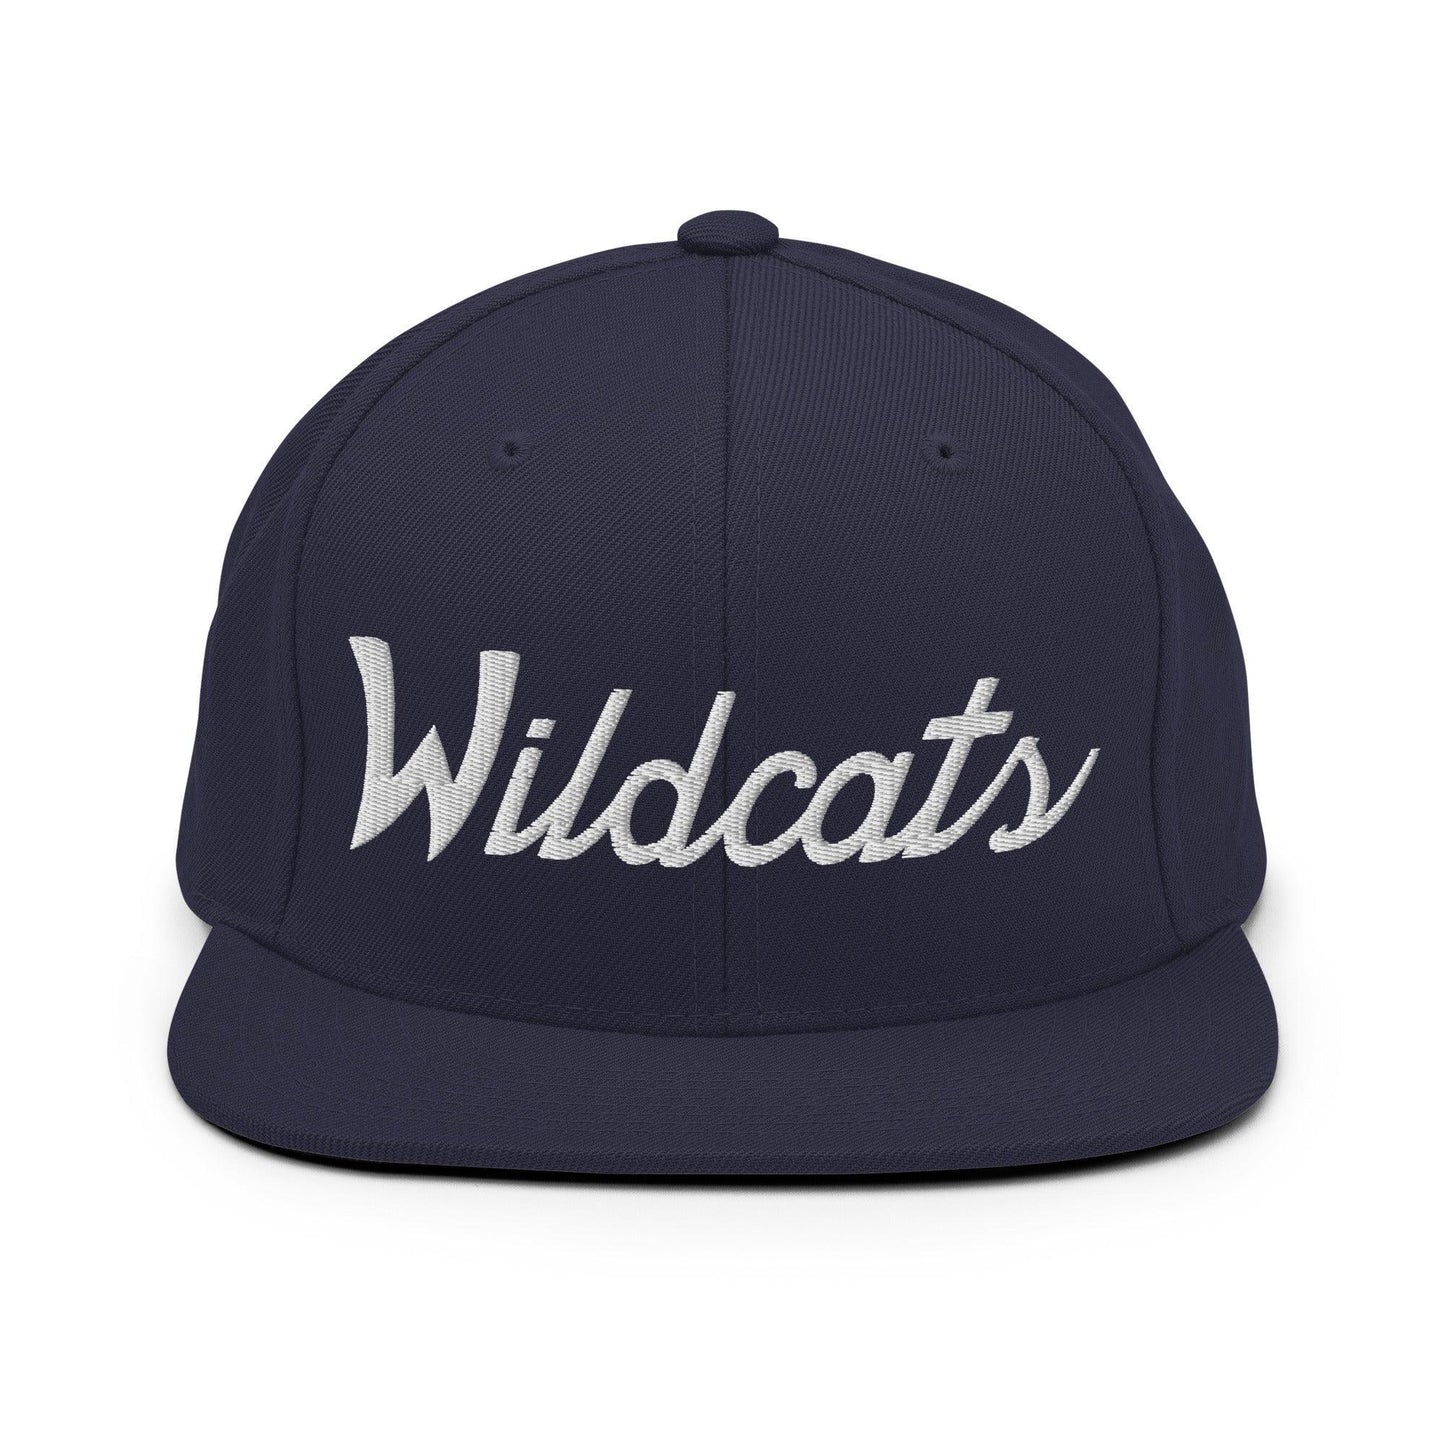 Wildcats School Mascot Script Snapback Hat Navy